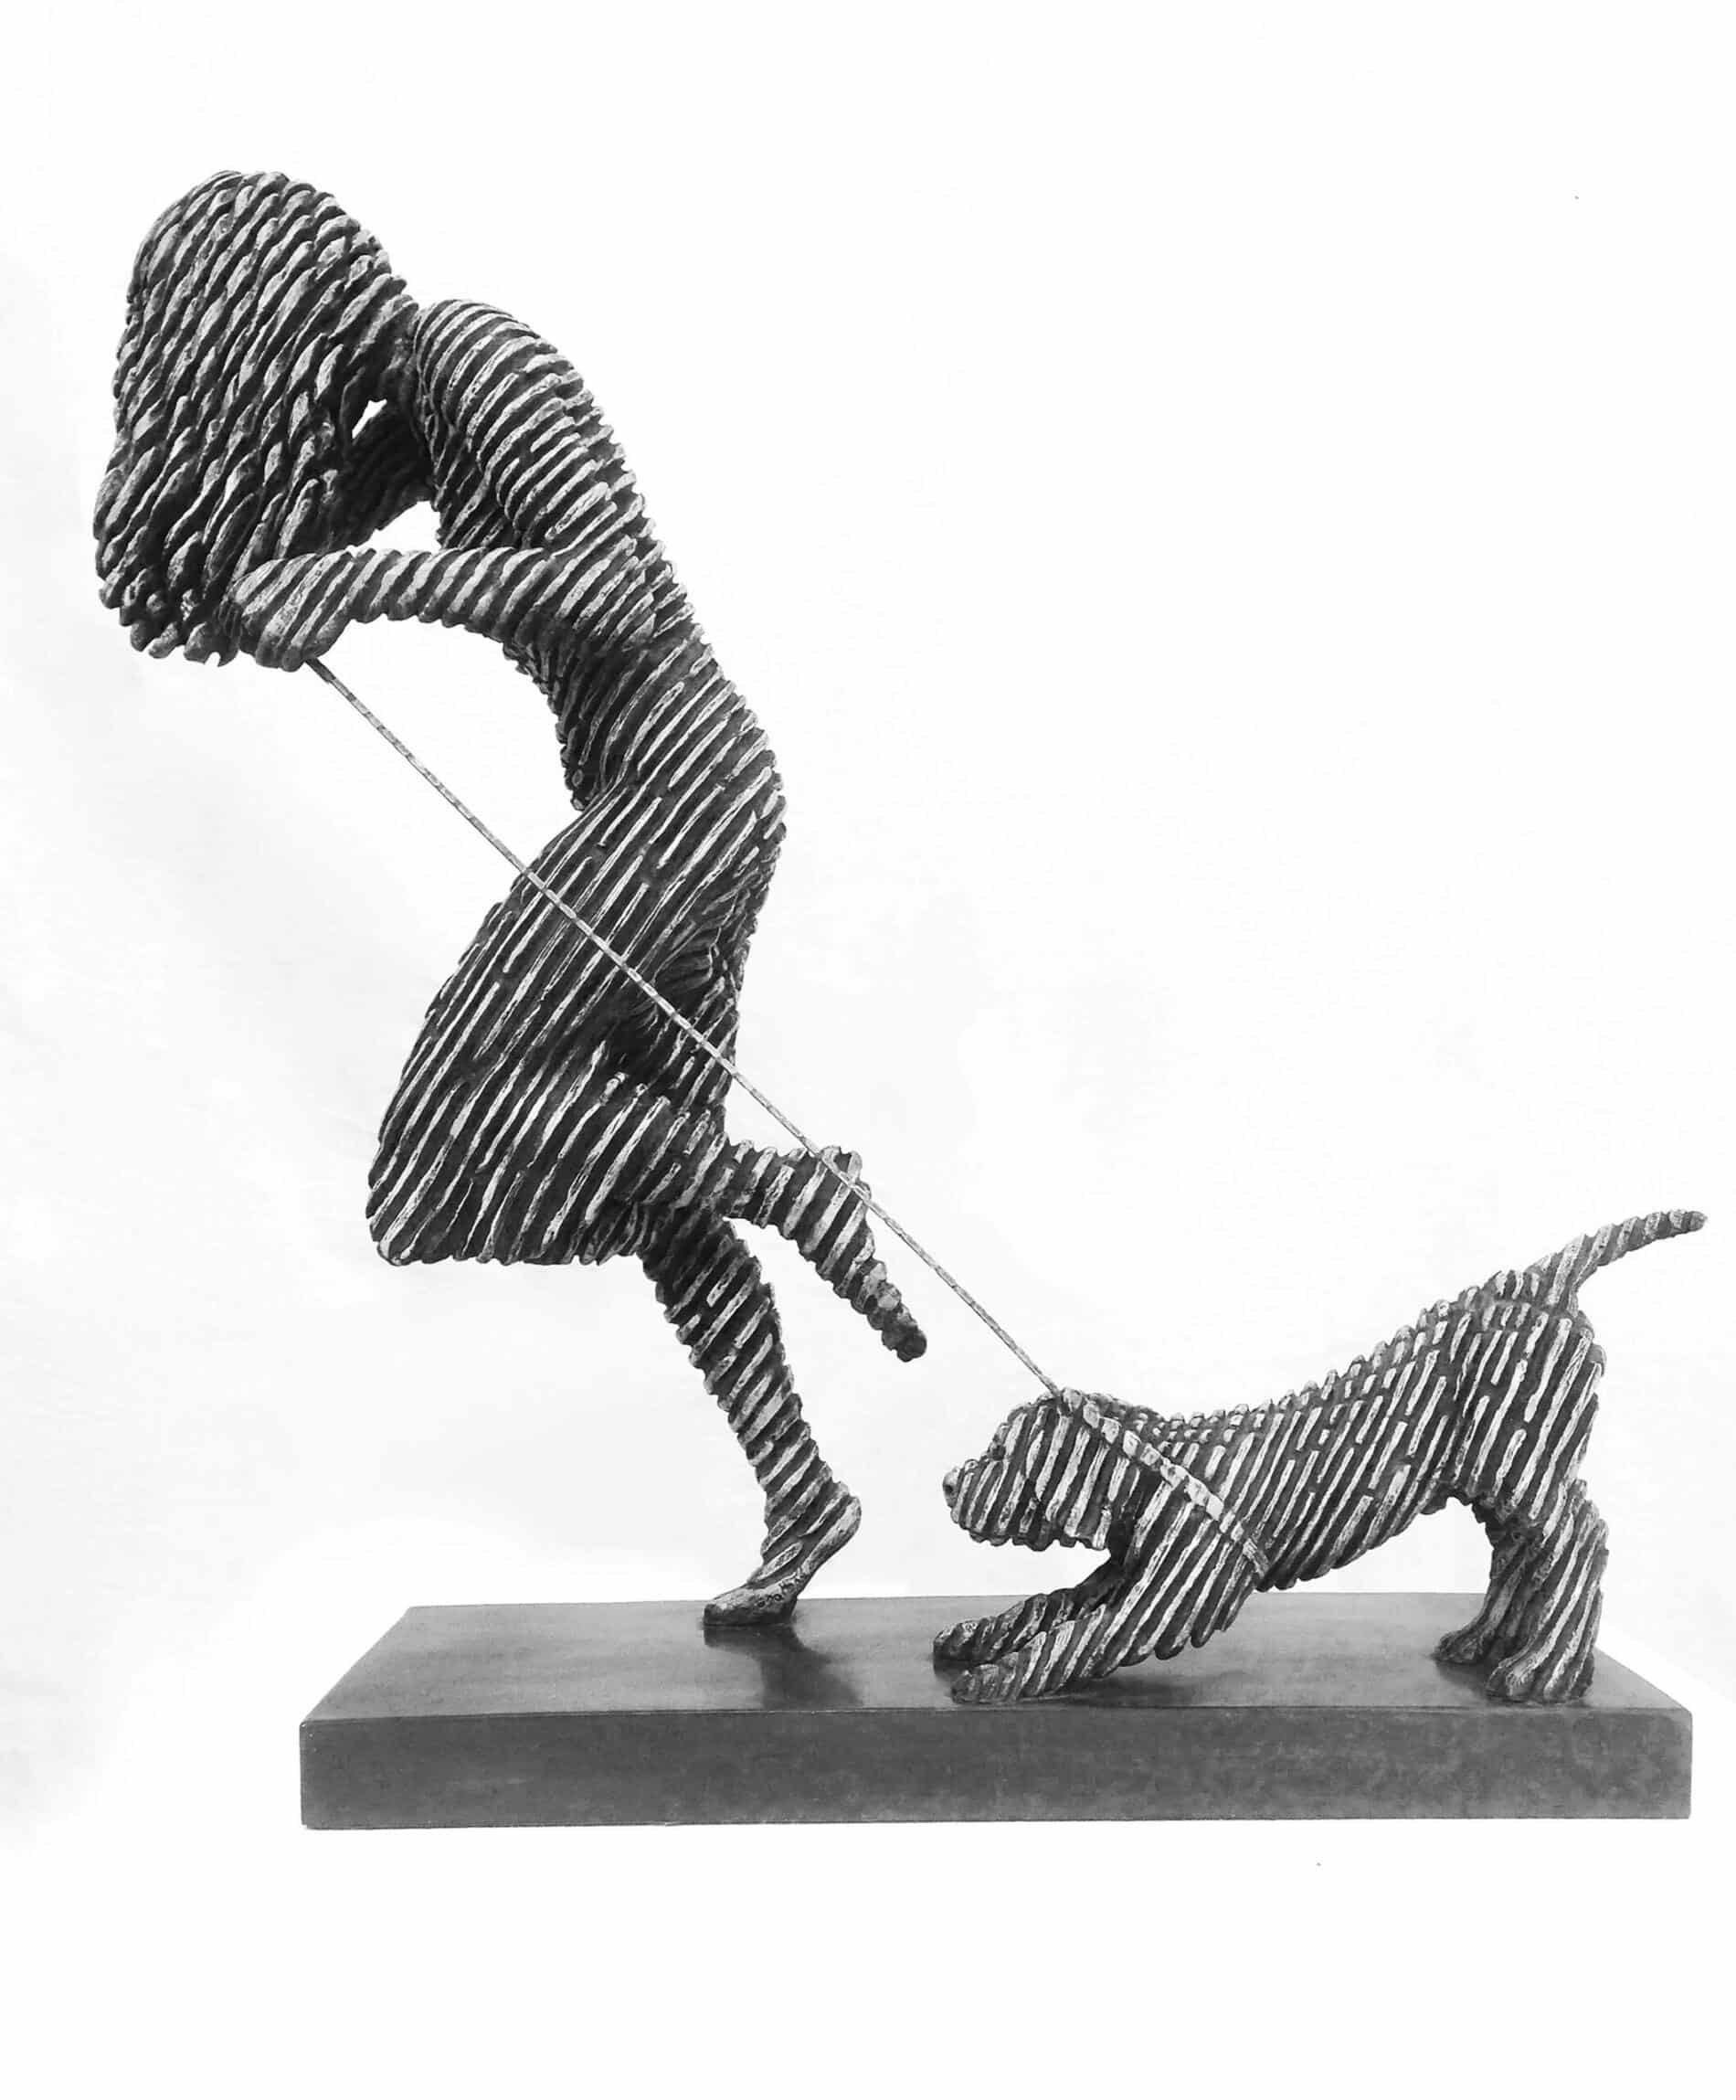 Jonathan Hateley esculturas de bronce perro